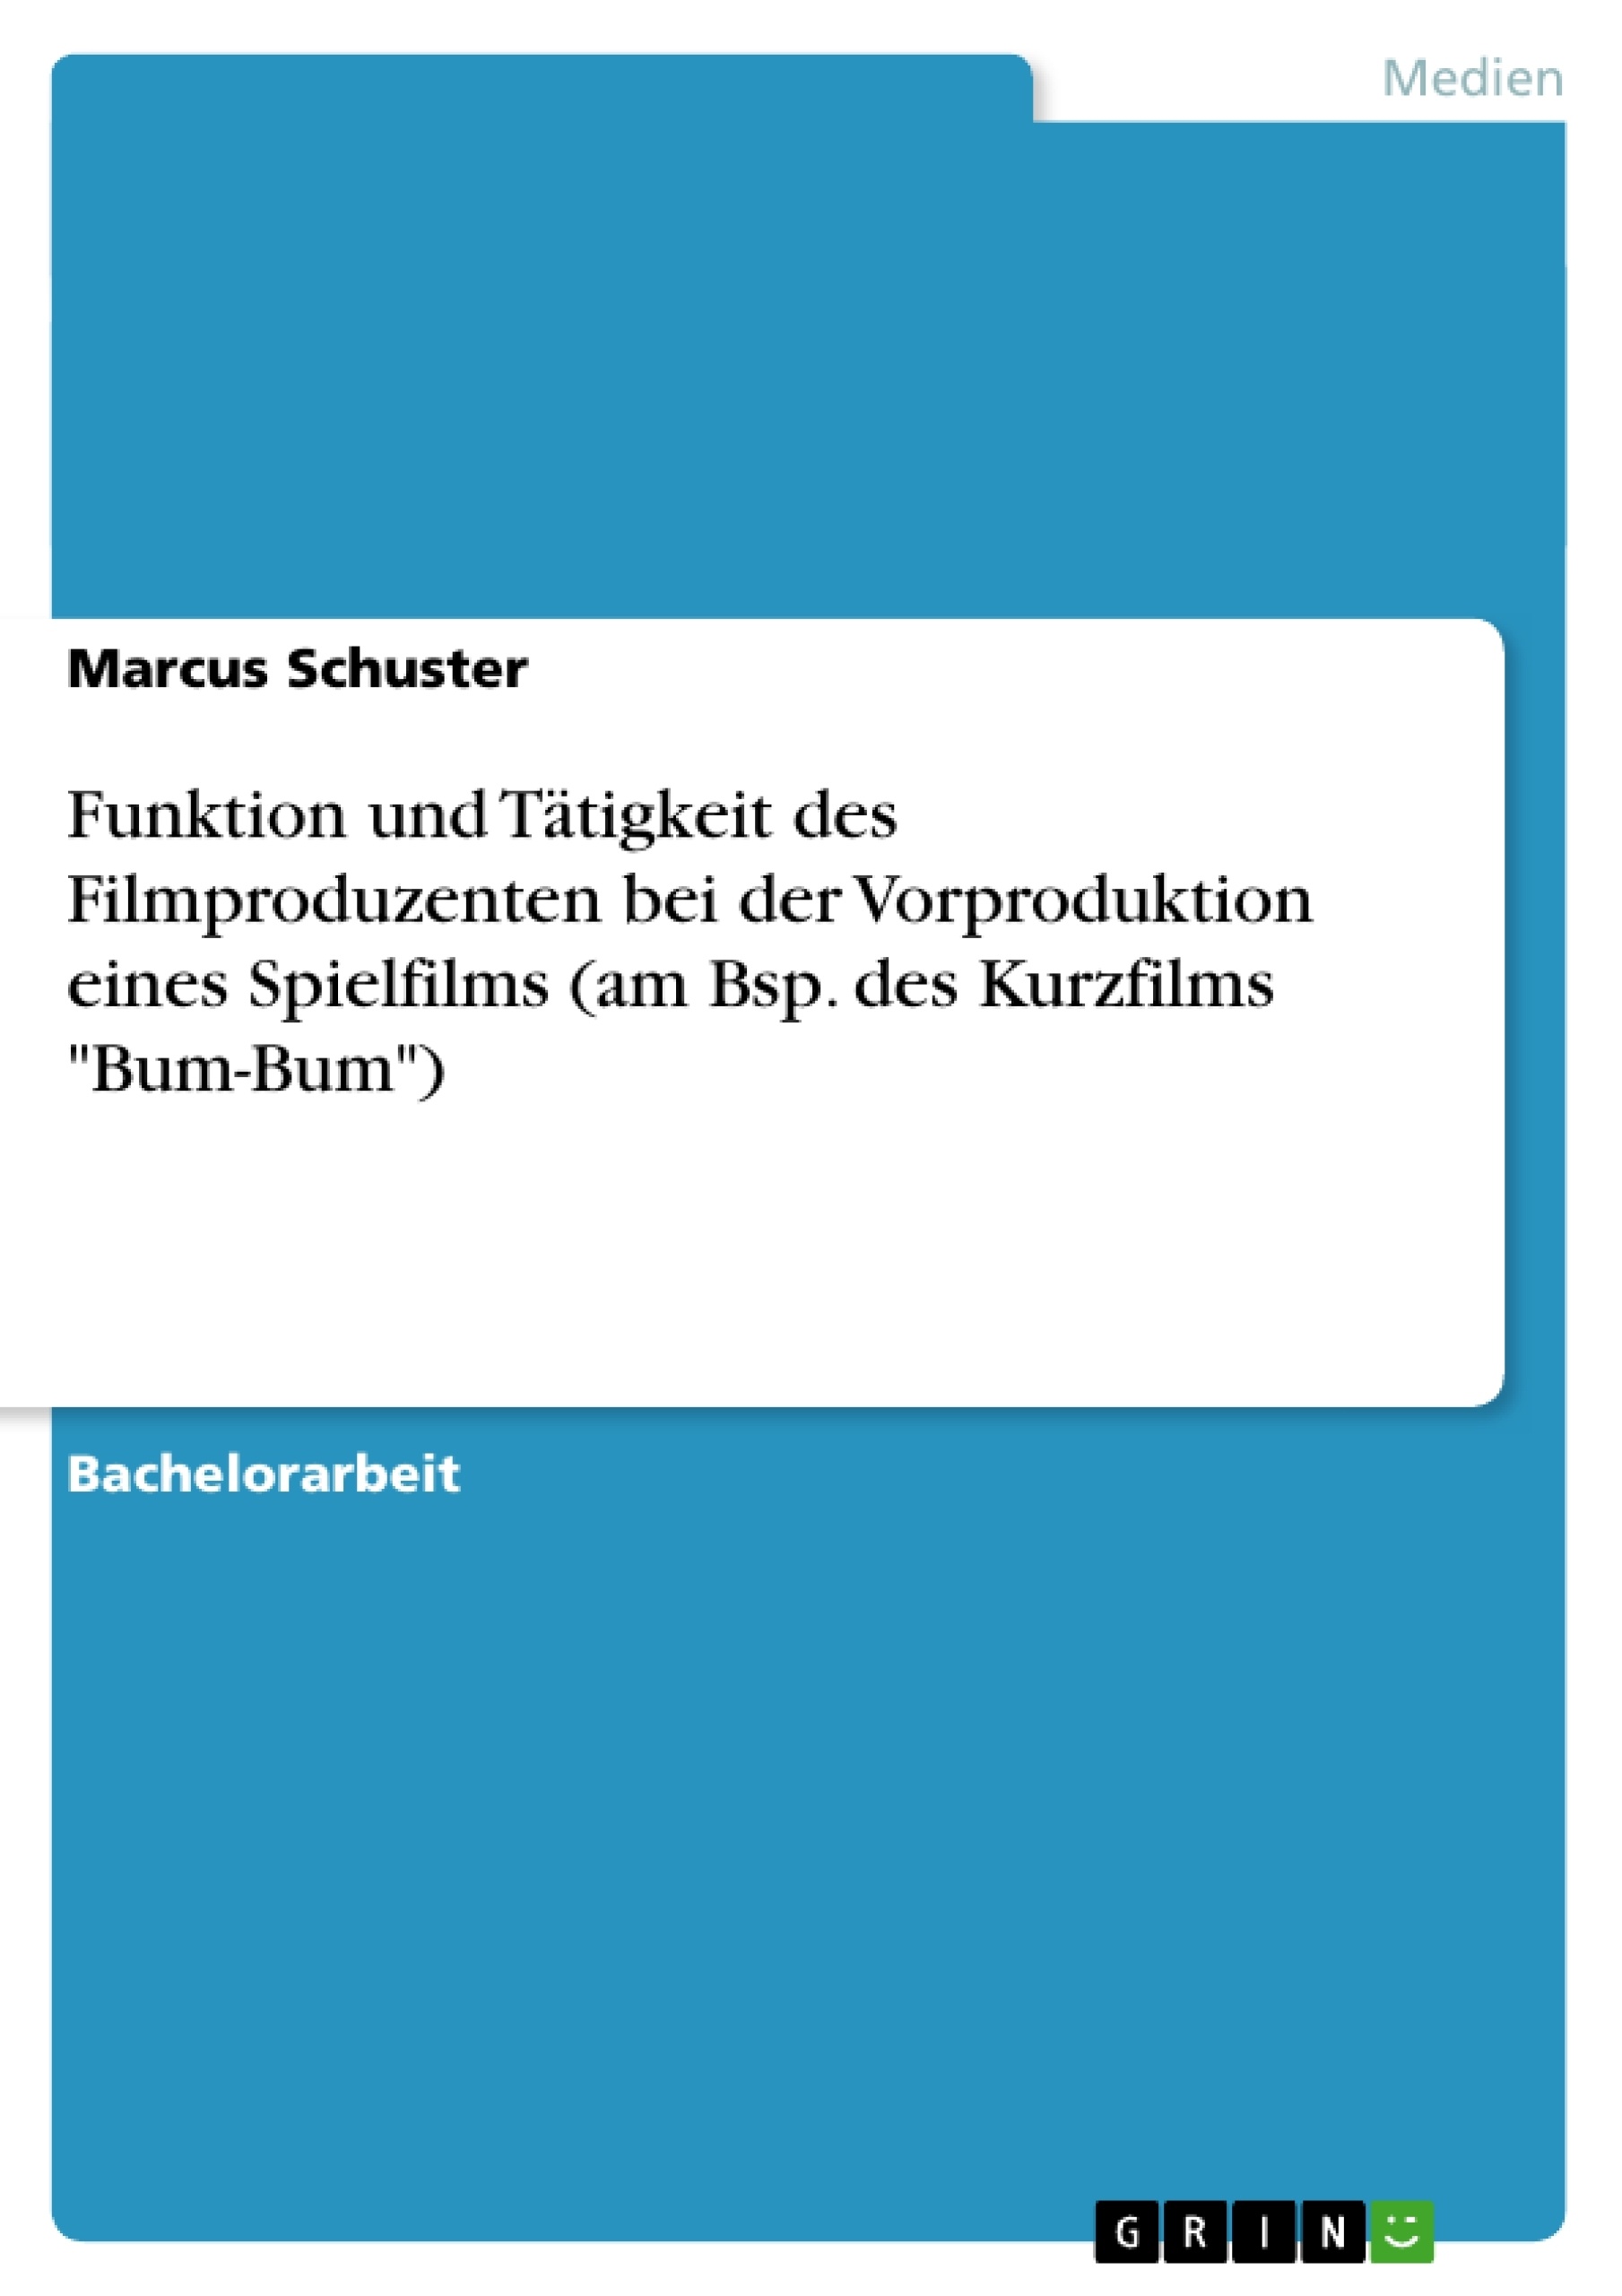 Titel: Funktion und Tätigkeit des Filmproduzenten bei der Vorproduktion eines Spielfilms (am Bsp. des Kurzfilms "Bum-Bum")